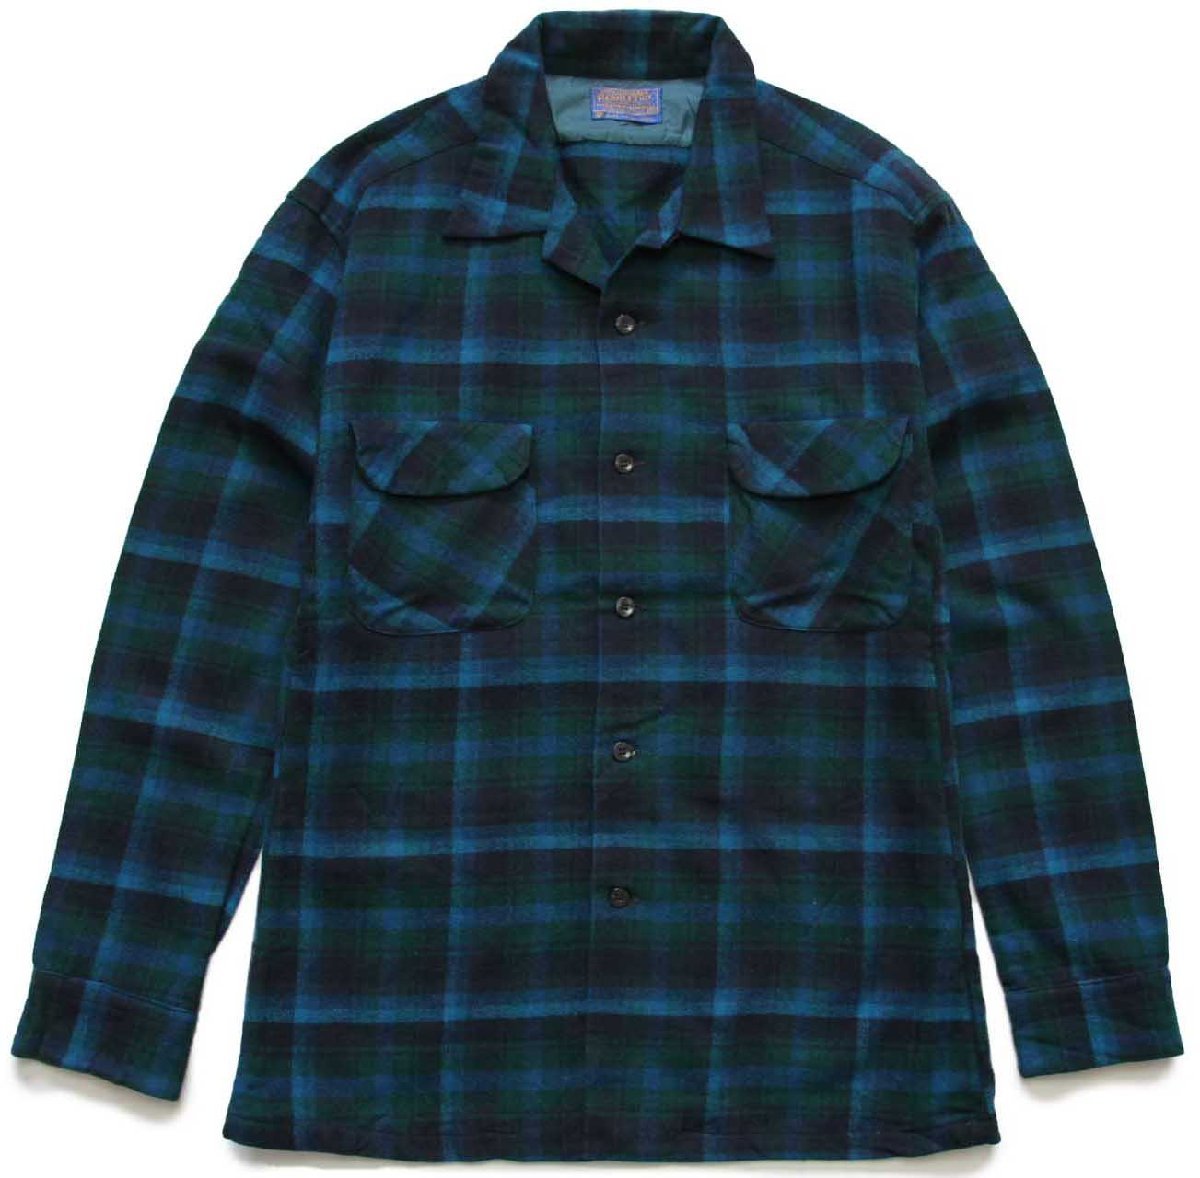 SIZE60s PENDLETON wool shirt オンブレ ウールシャツ 青 黒 - トップス